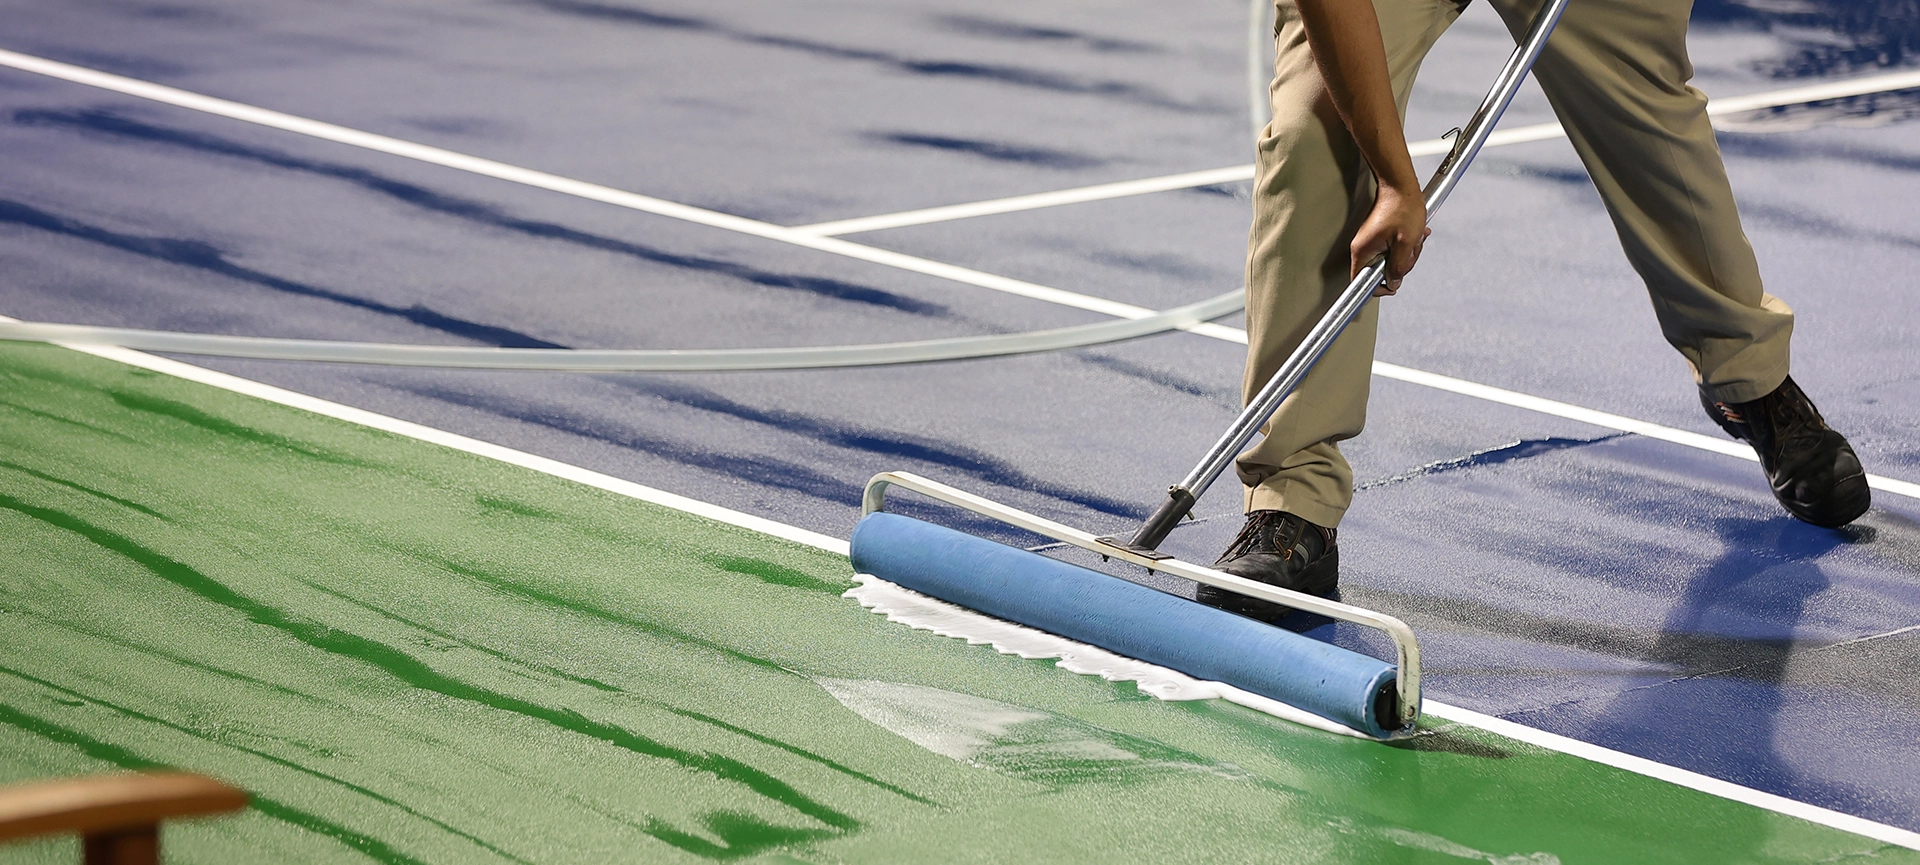 tennis court maintenance in ottawa